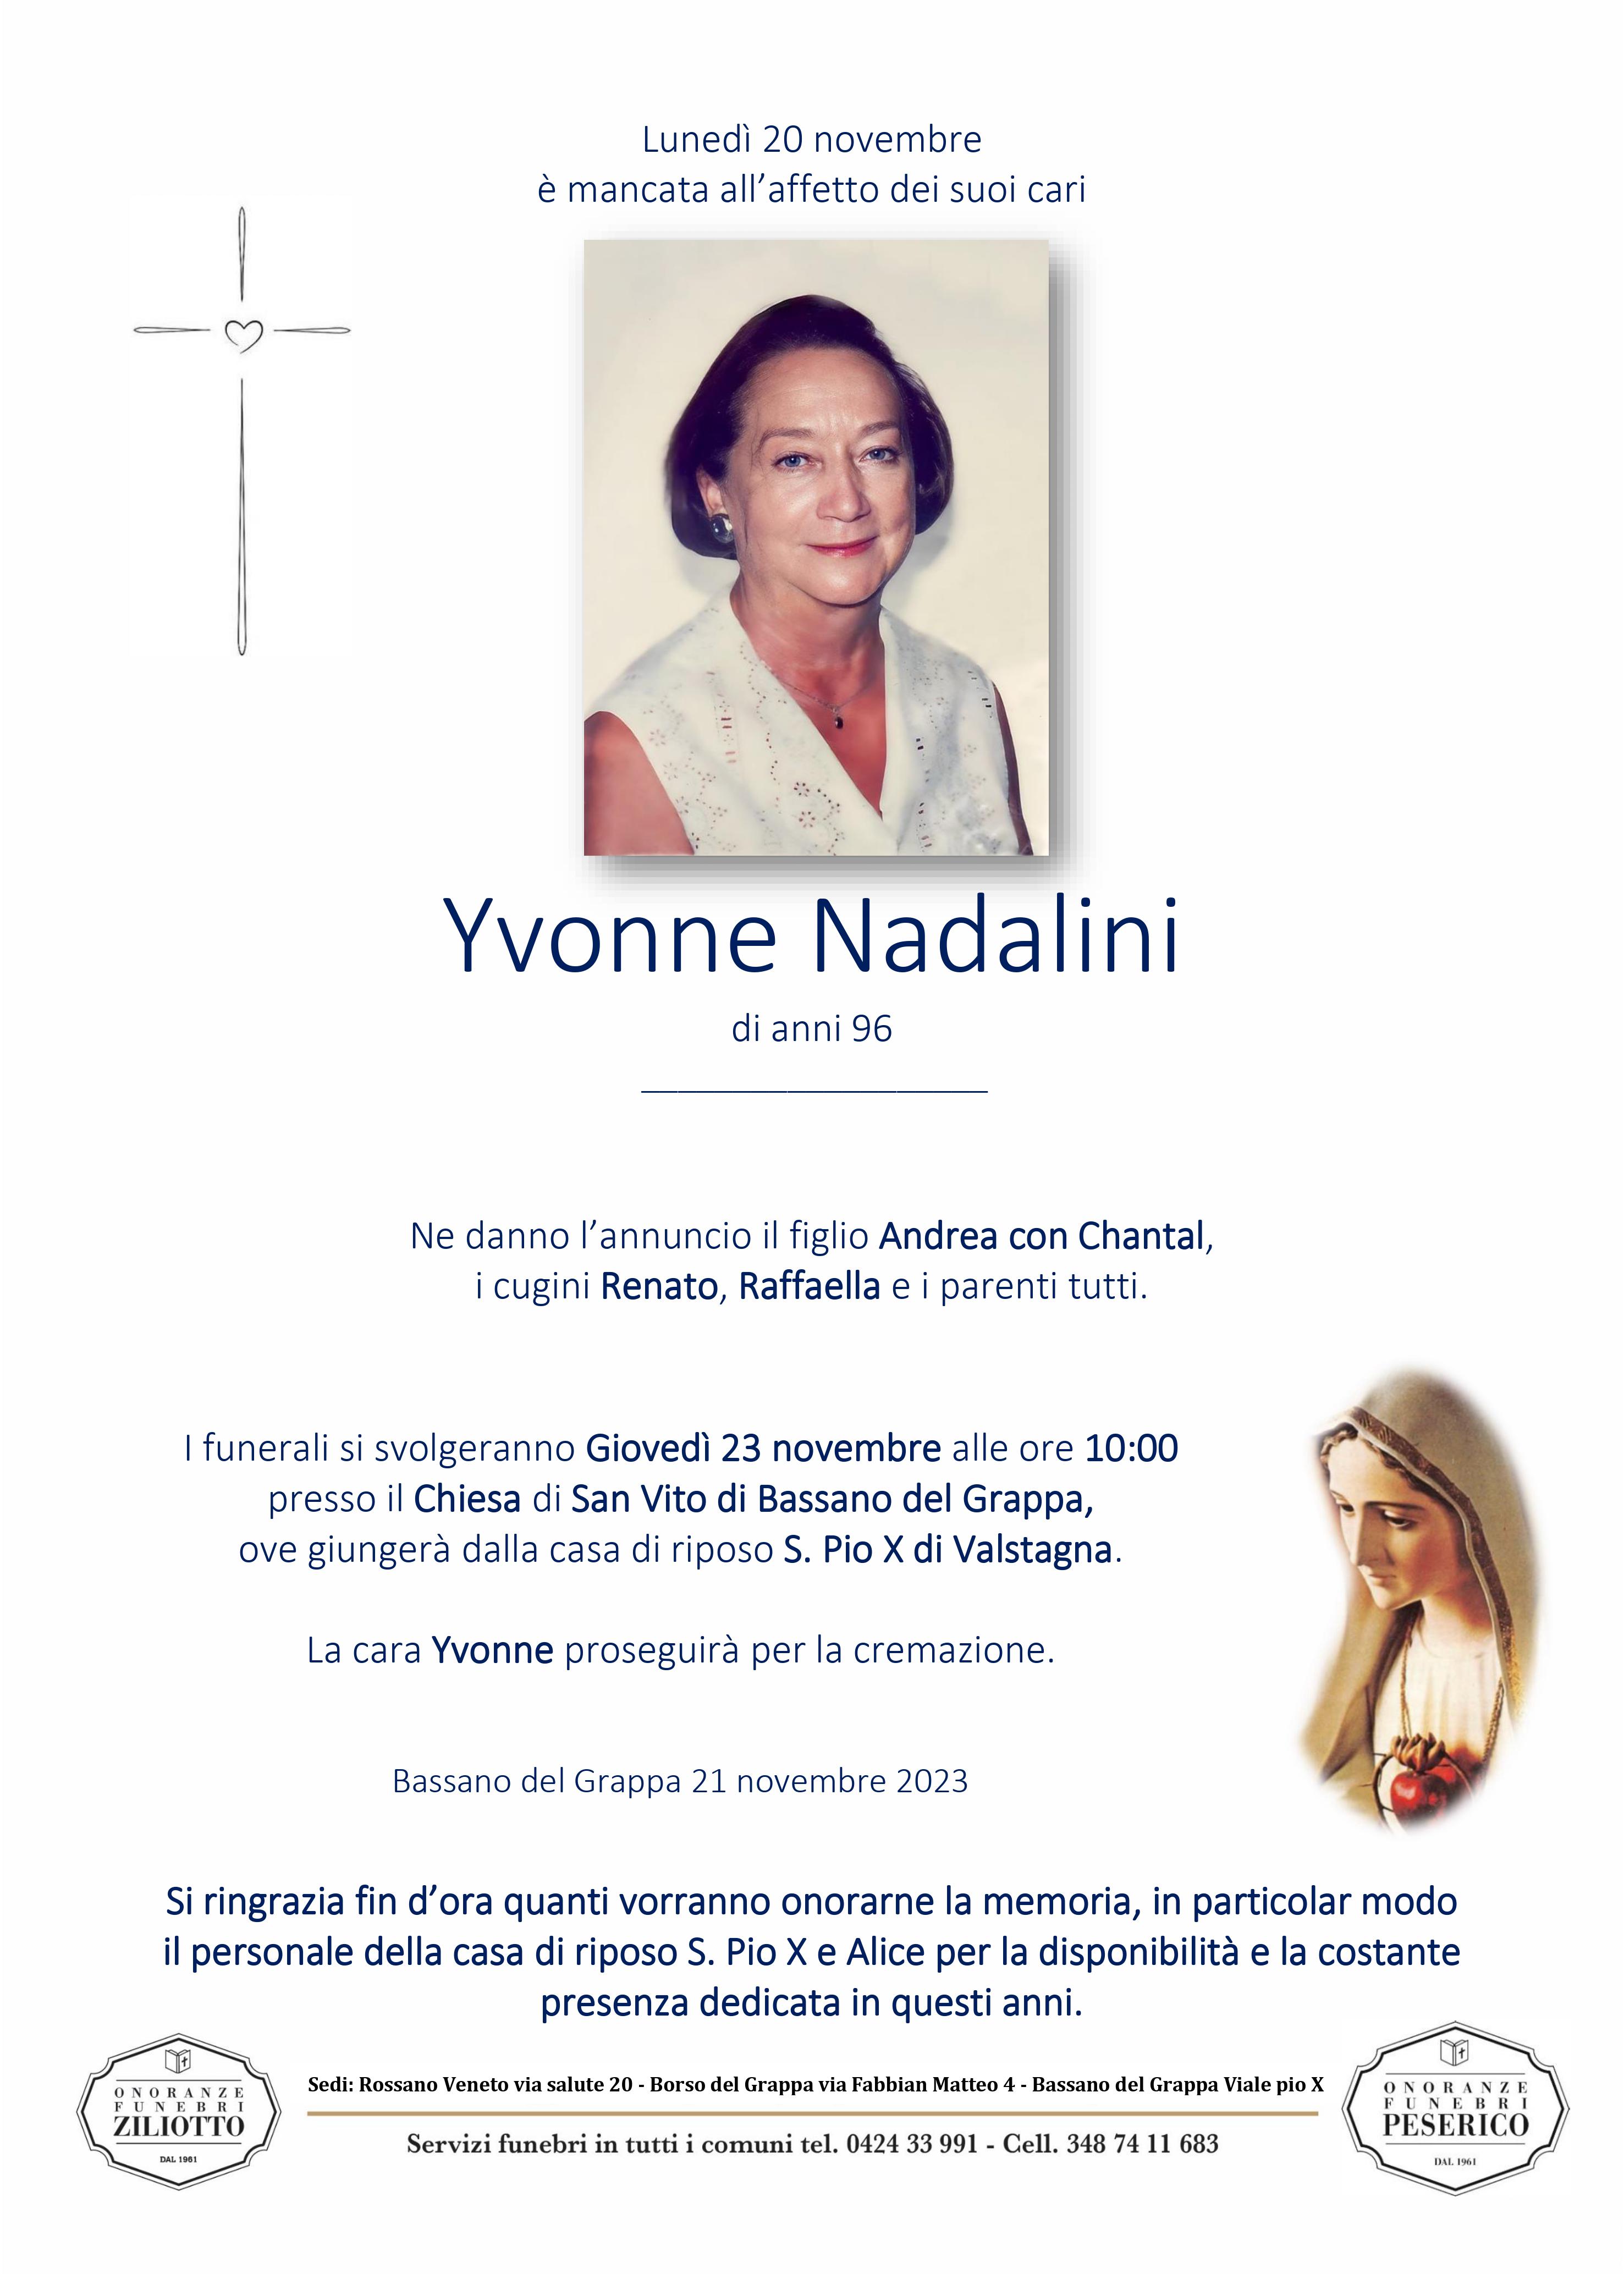 Yvonne Nadalini - 96 anni - San Vito, Bassano del Gr